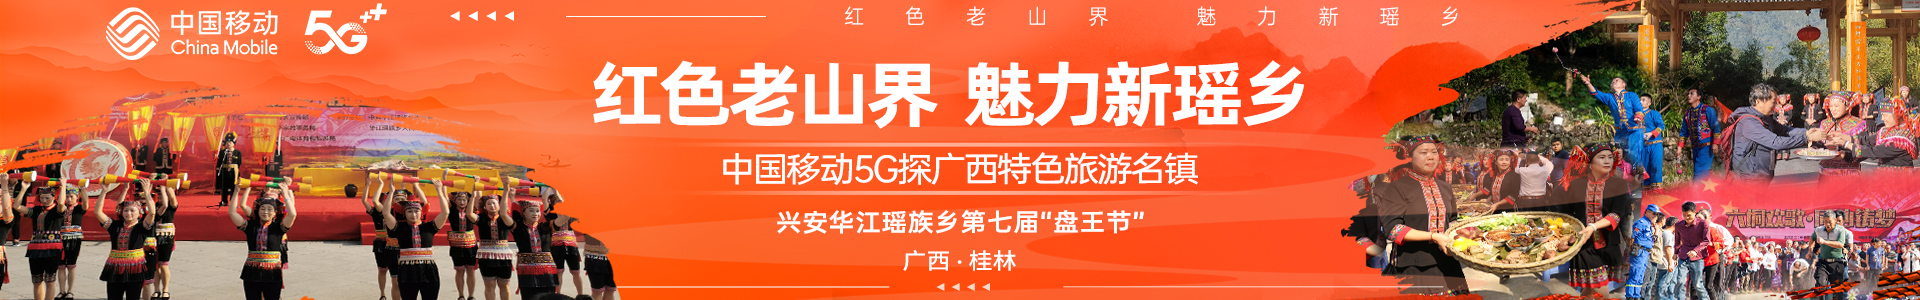 中国移动5G带您走进华江盘王节